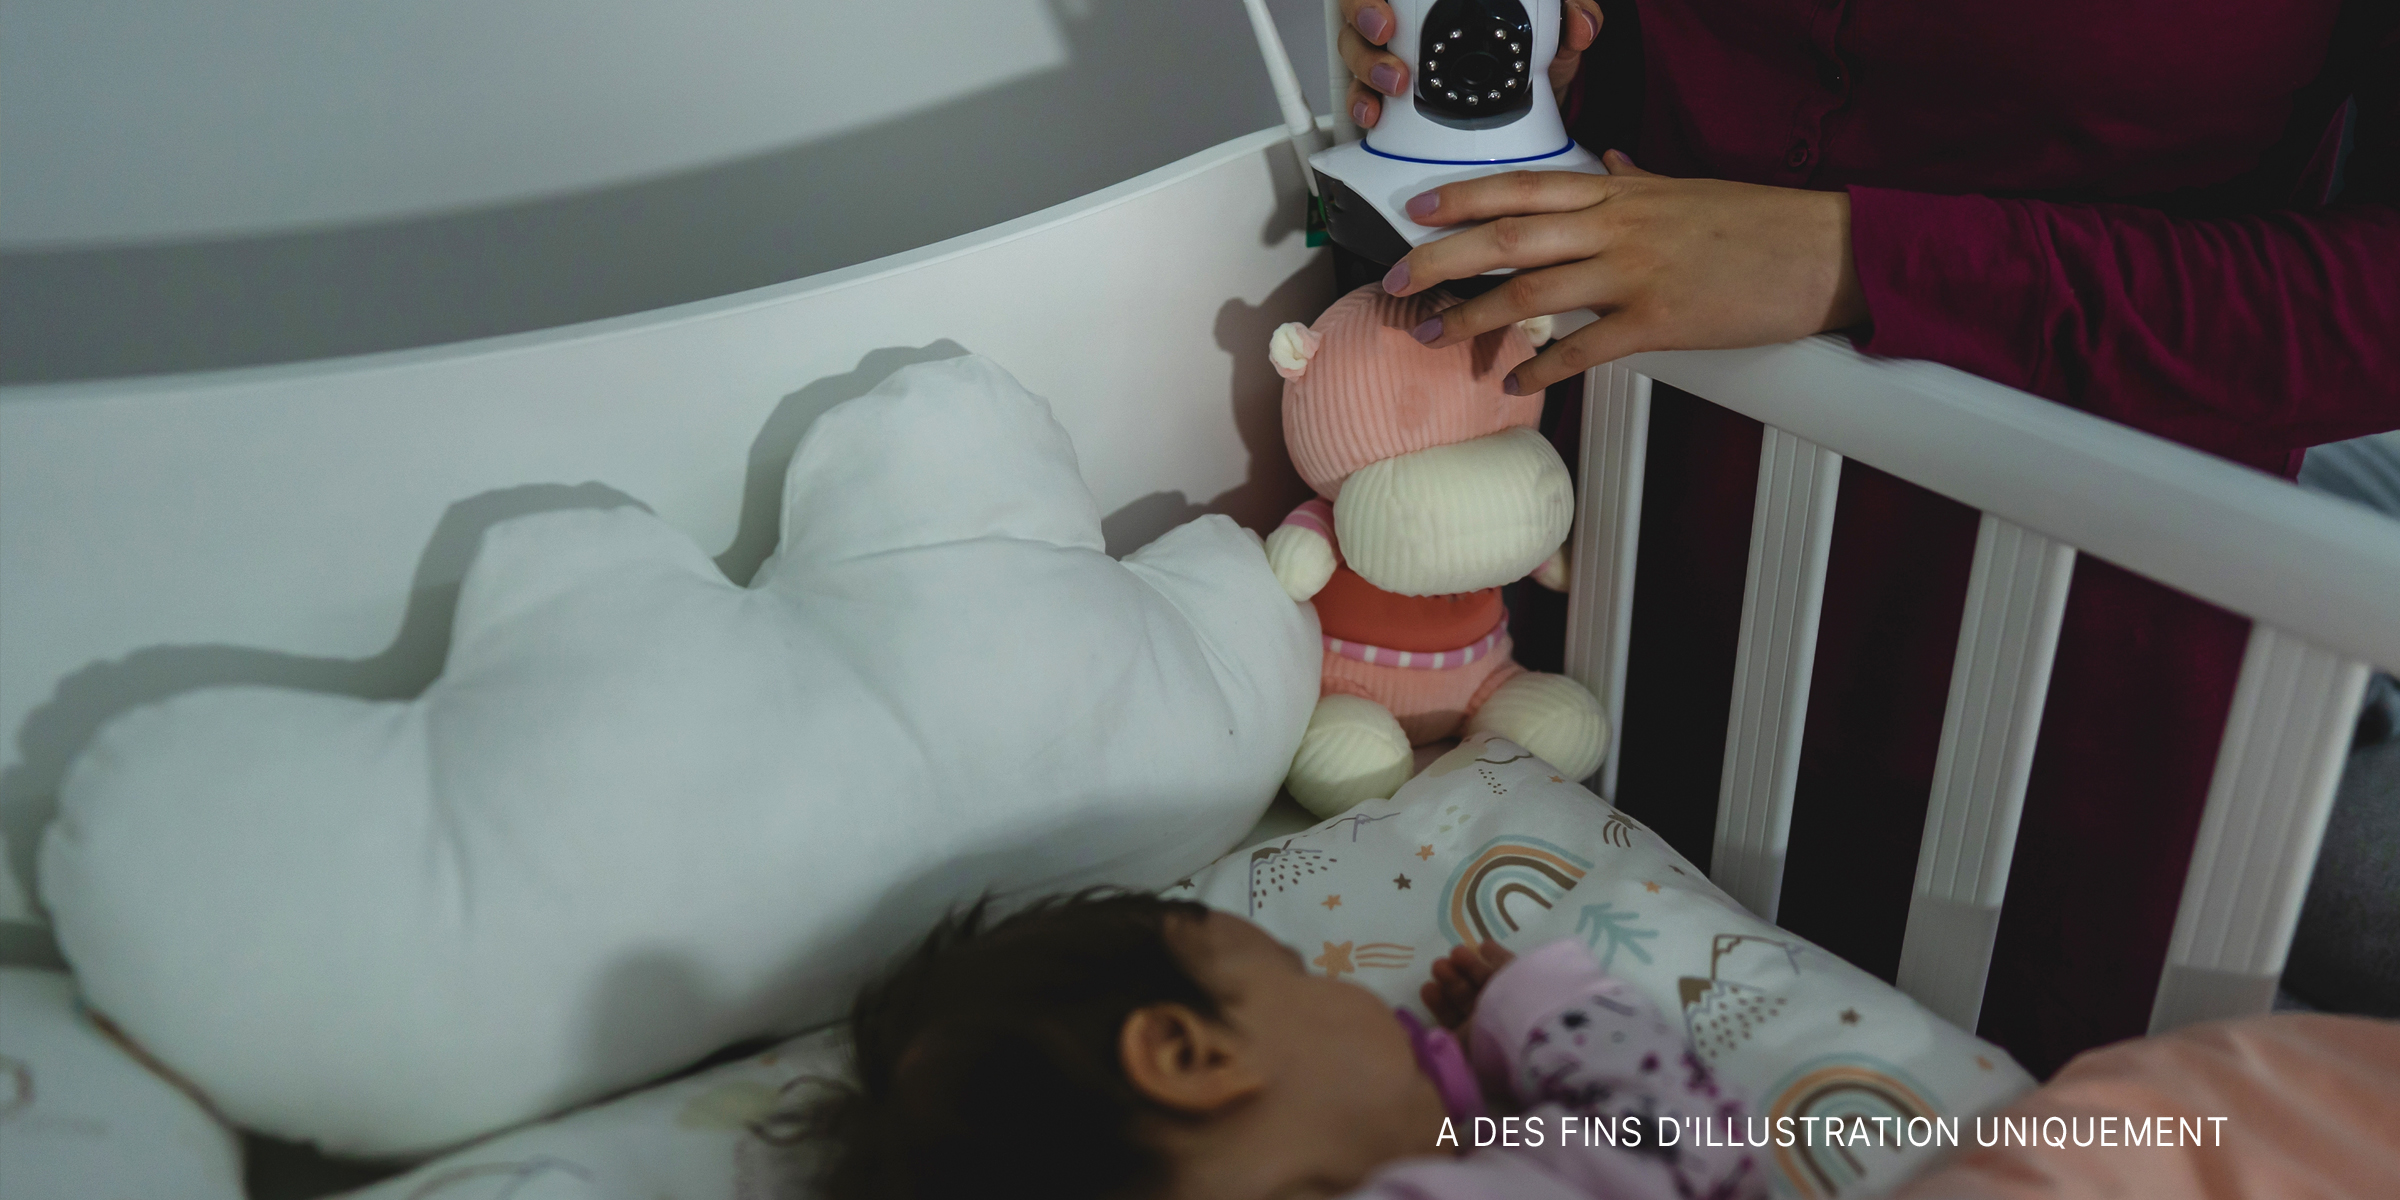 Caméra de surveillance dans la chambre des enfants | Source : Shutterstock